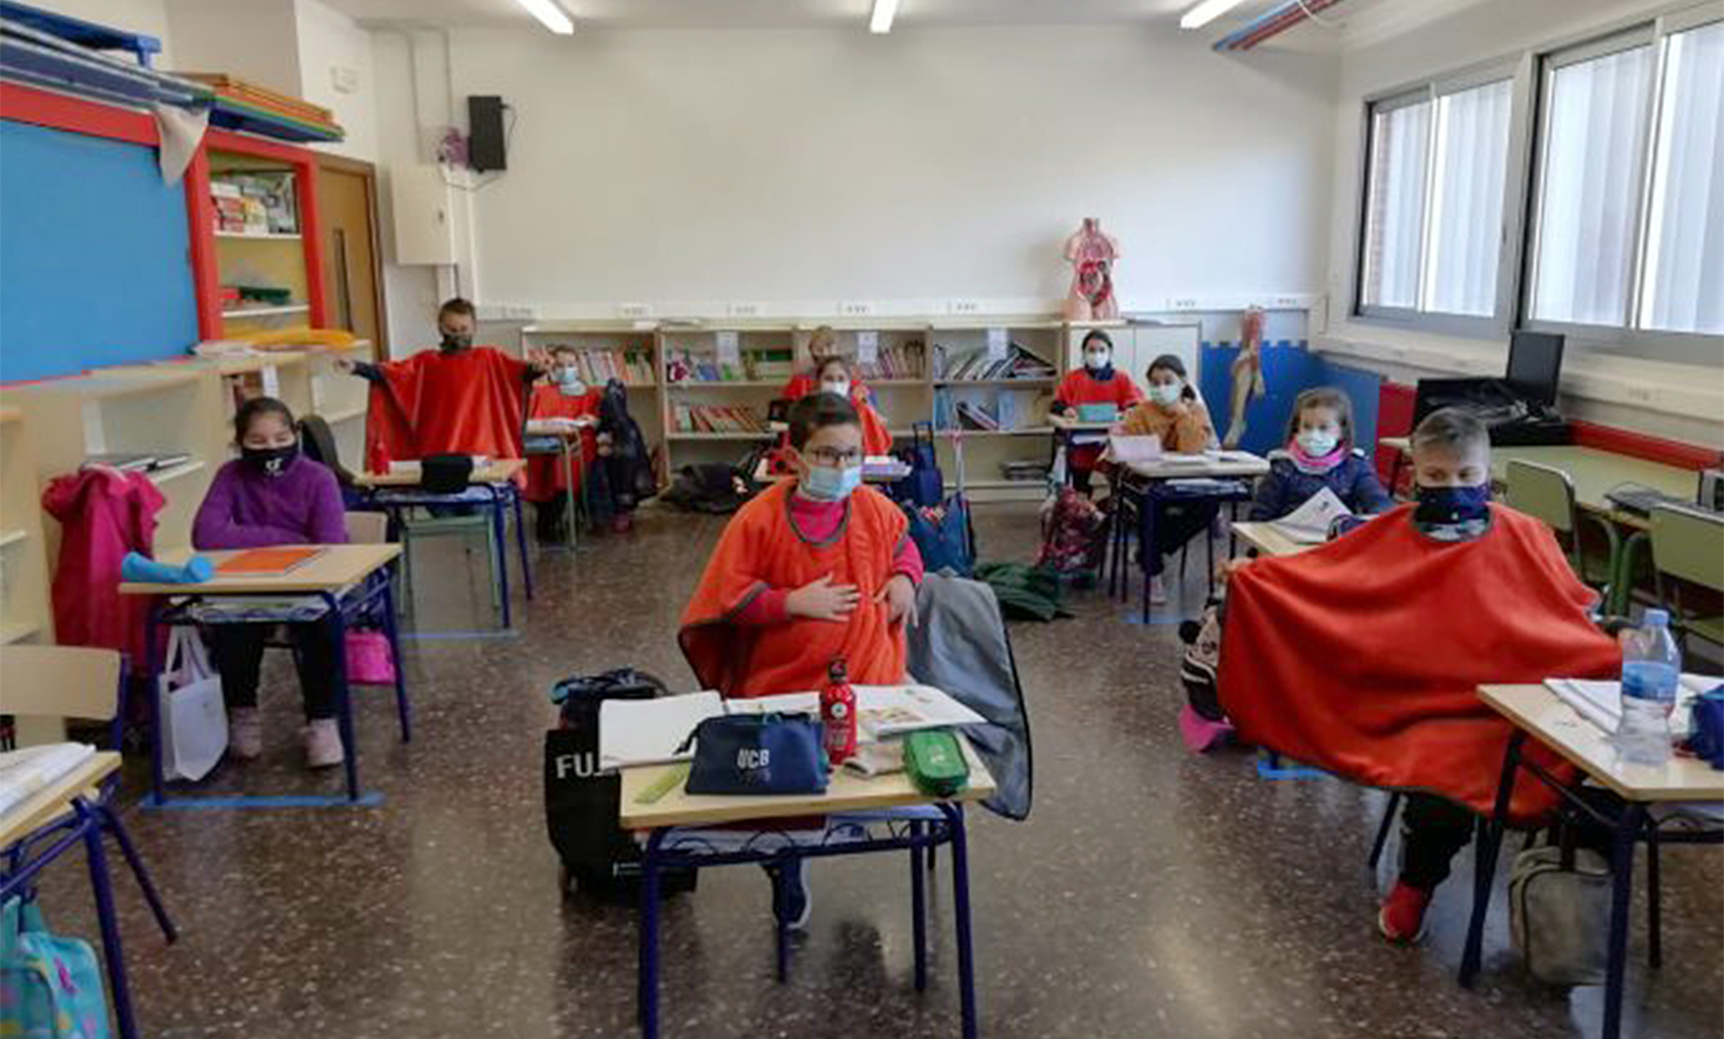 Alumnos de un centro educativo en Nules se protegen con mantas por el fr�o.